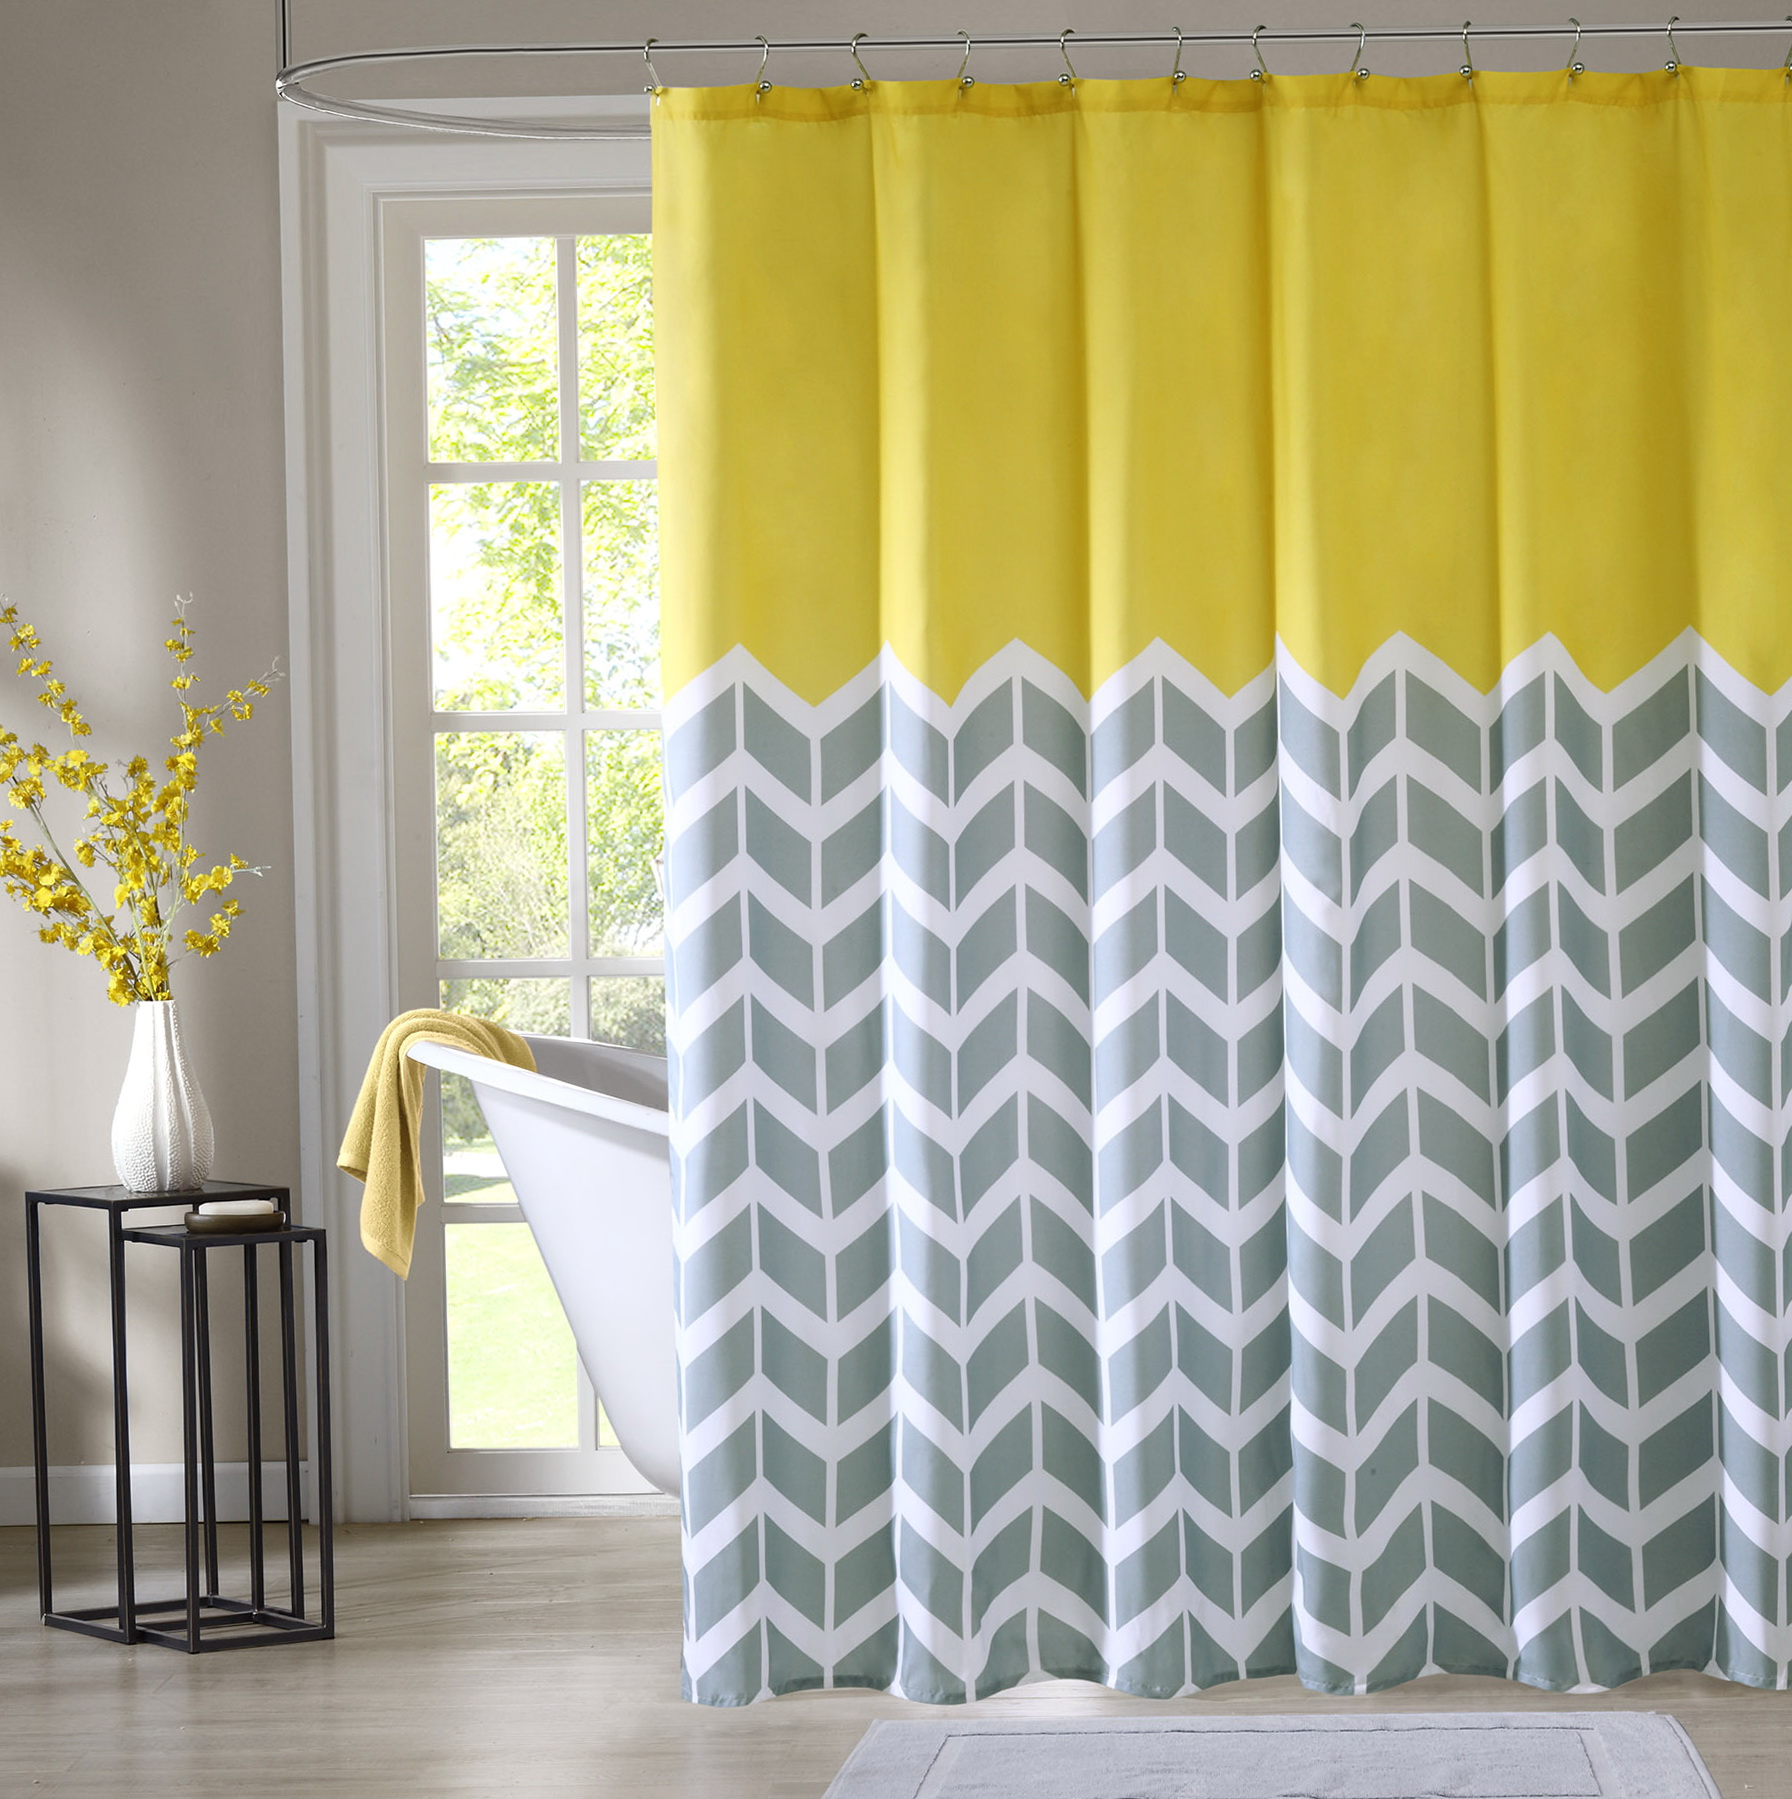 Cheap Shower Curtain Sets | Home Design Ideas1792 x 1799